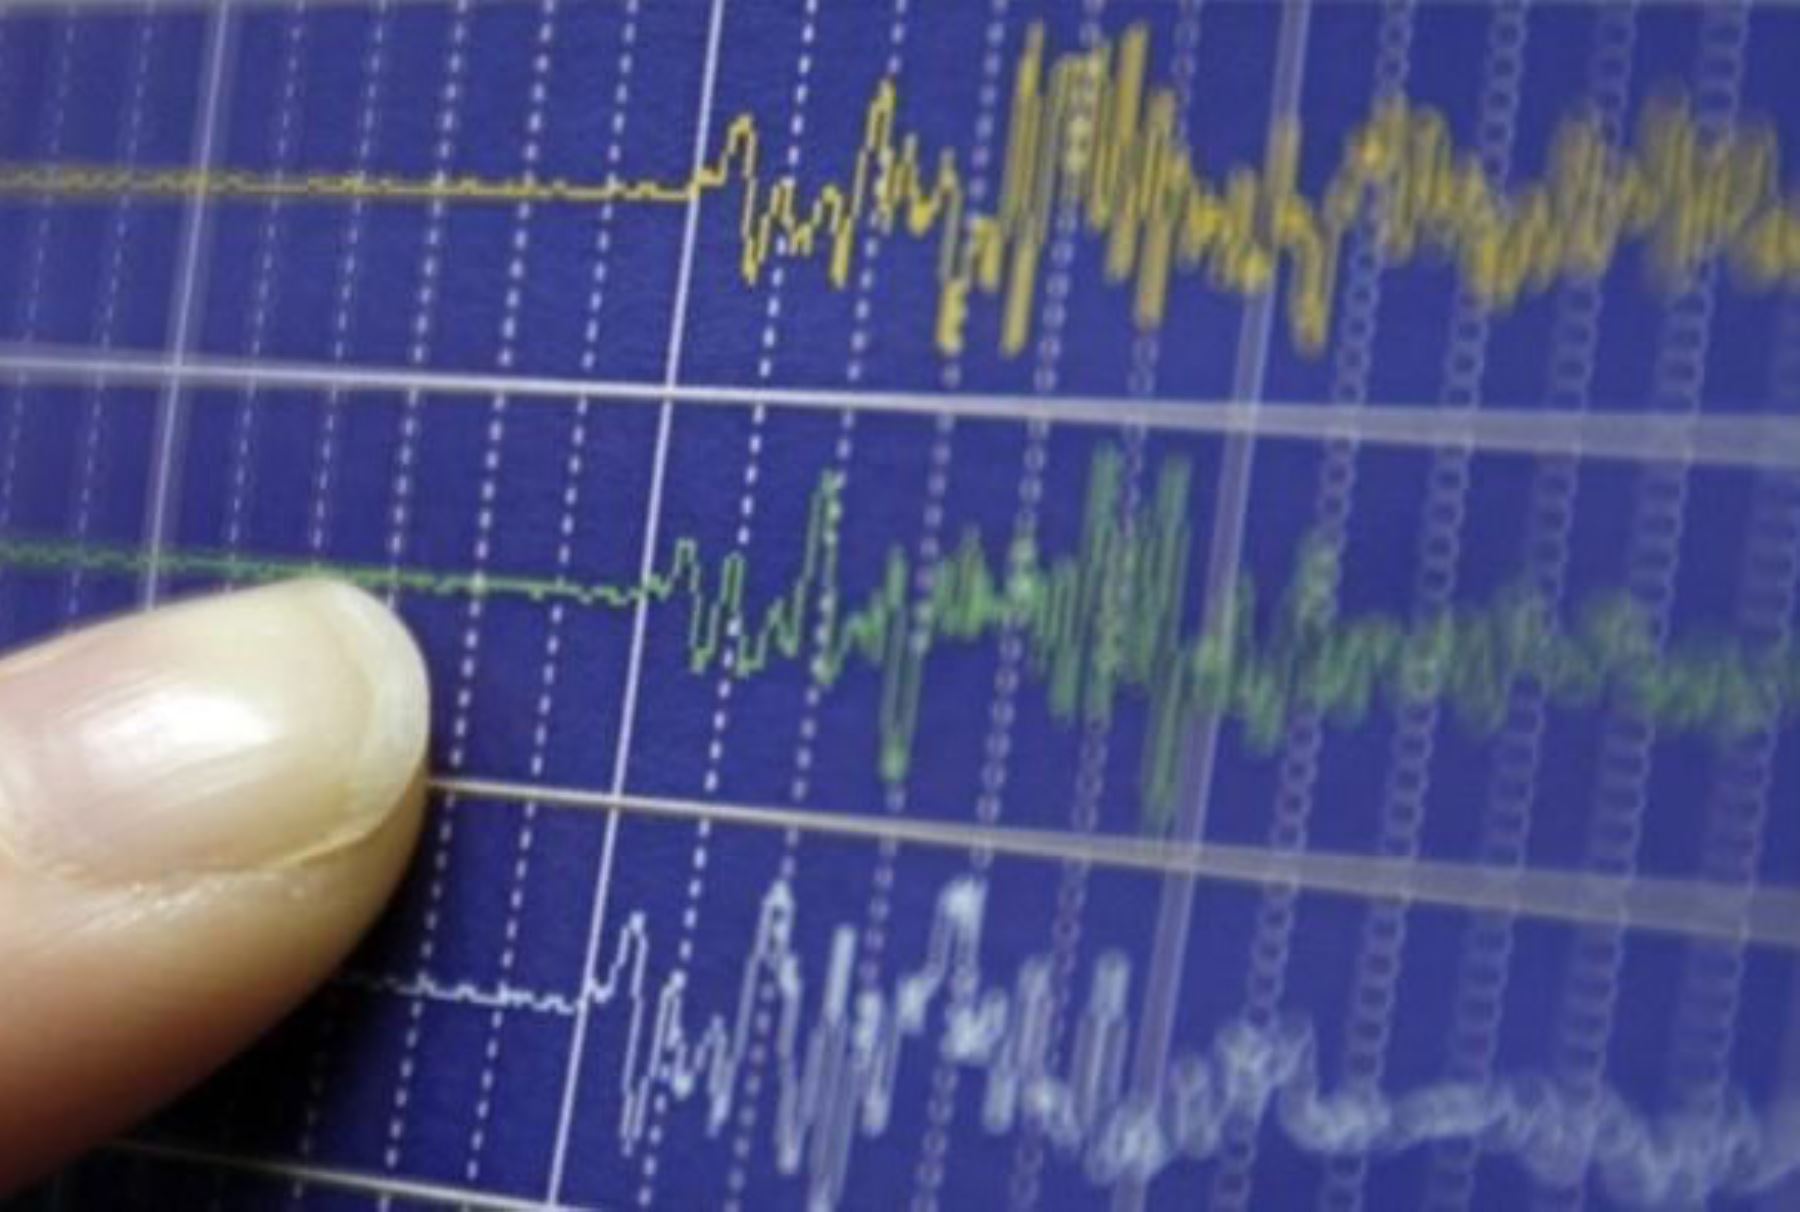 Dos sismos de moderada magnitud se registraron en lo que va del día en las regiones de Áncash e Ica, informó el Instituto Geofísico del Perú (IGP). ANDINA/Difusión